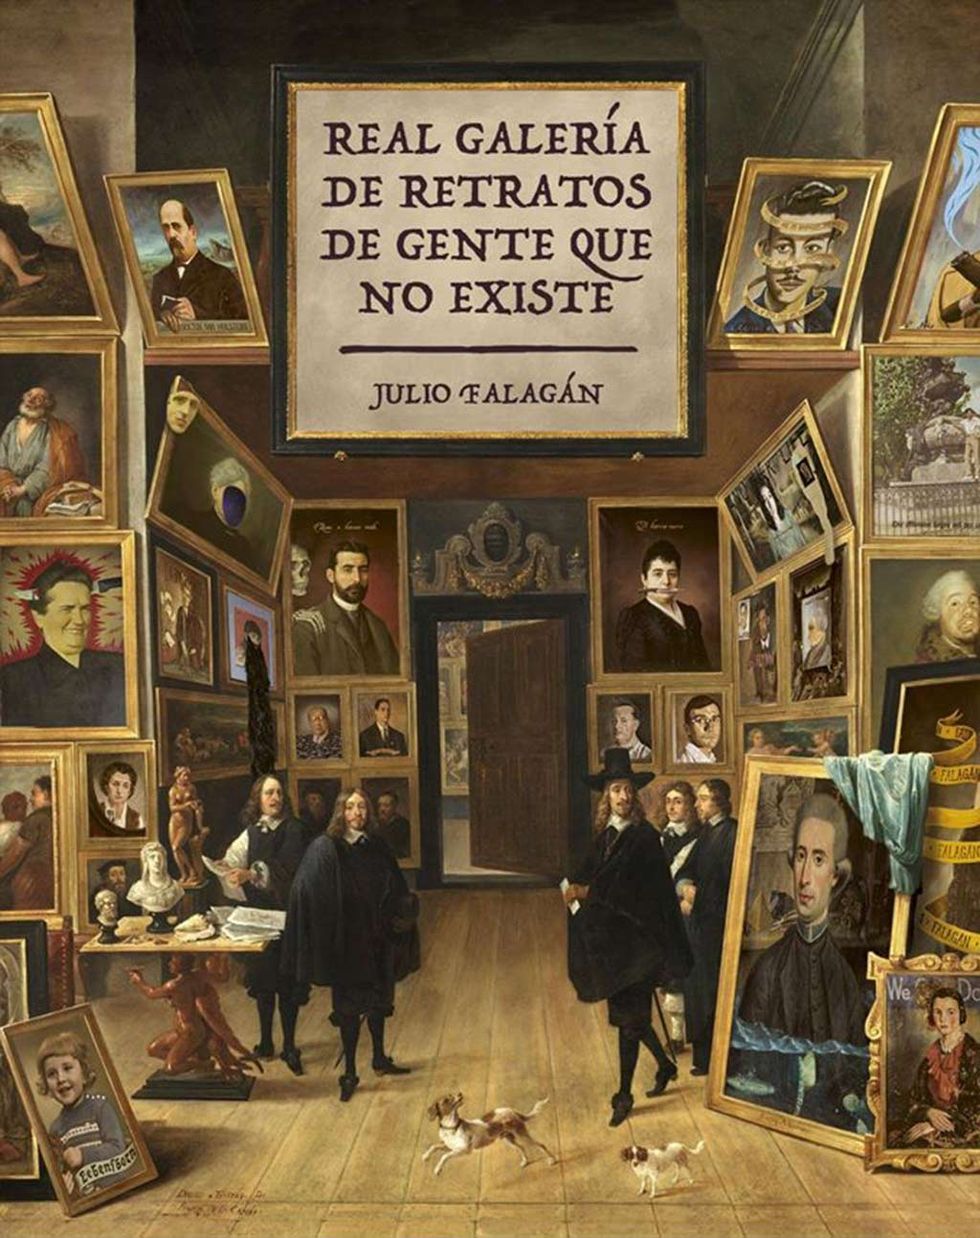 Exposición Real galería de retratos de gente que no existe del artista Julio Falagán